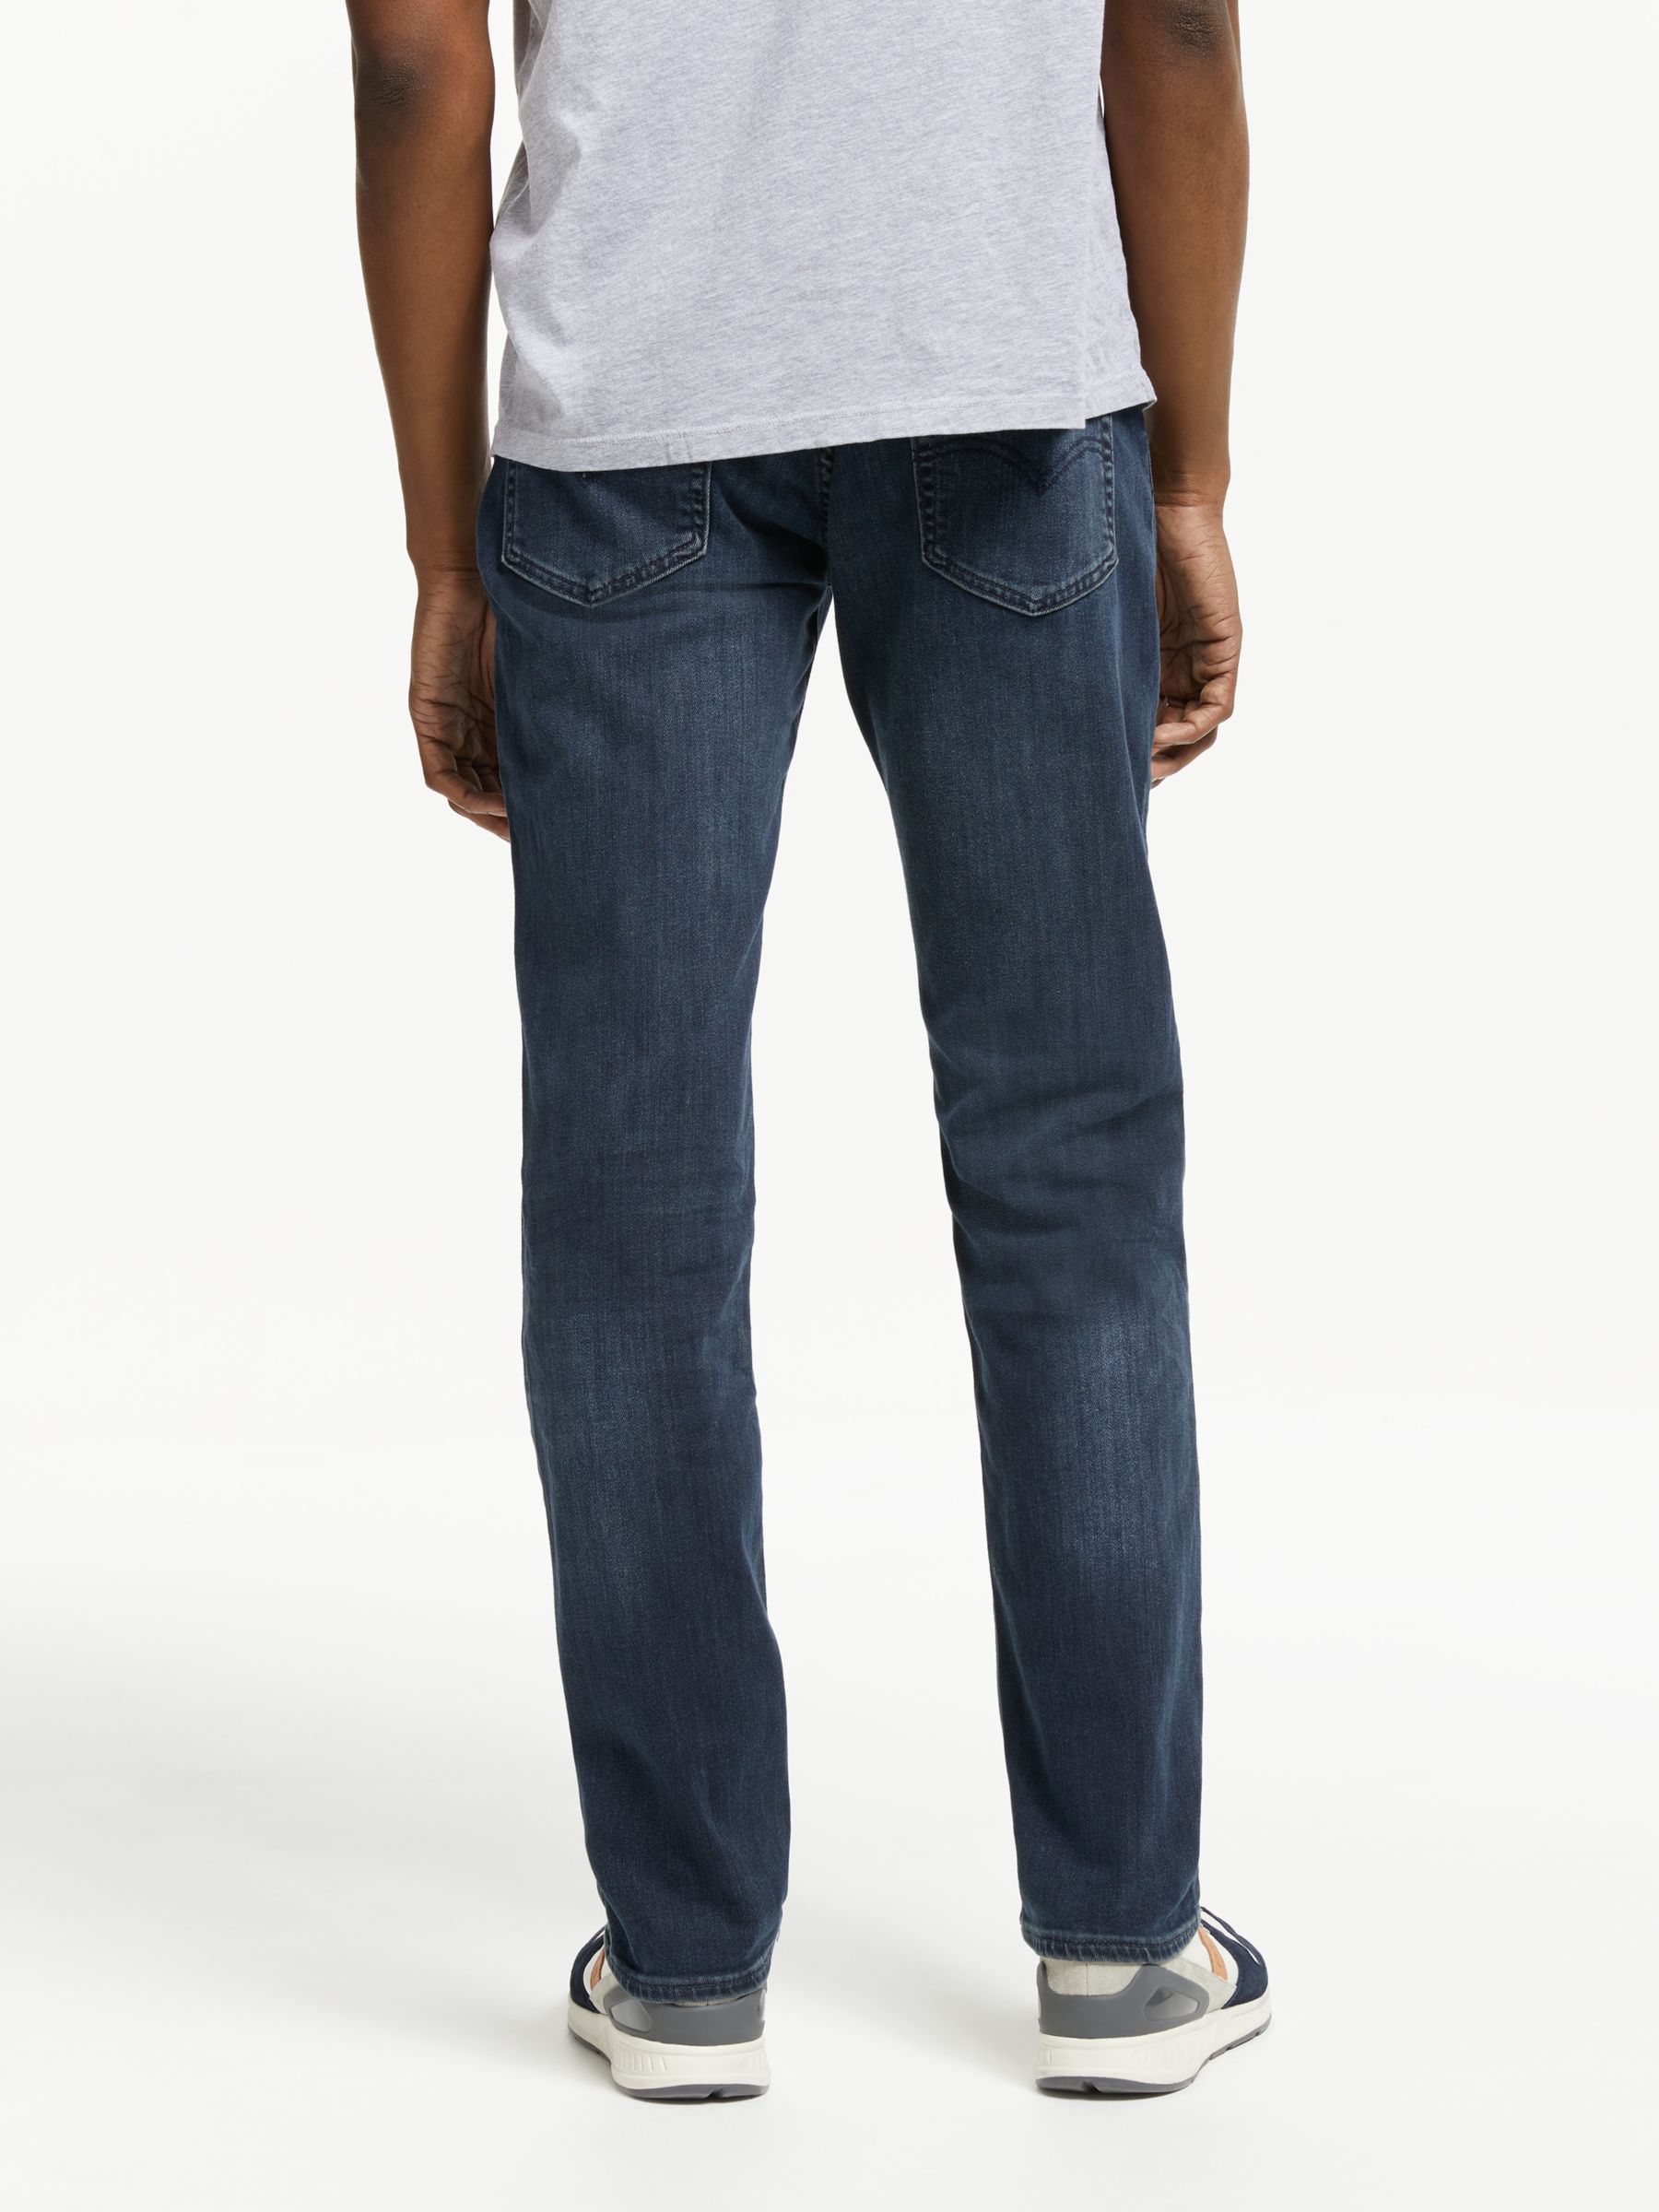 buy levi's 511 jeans online